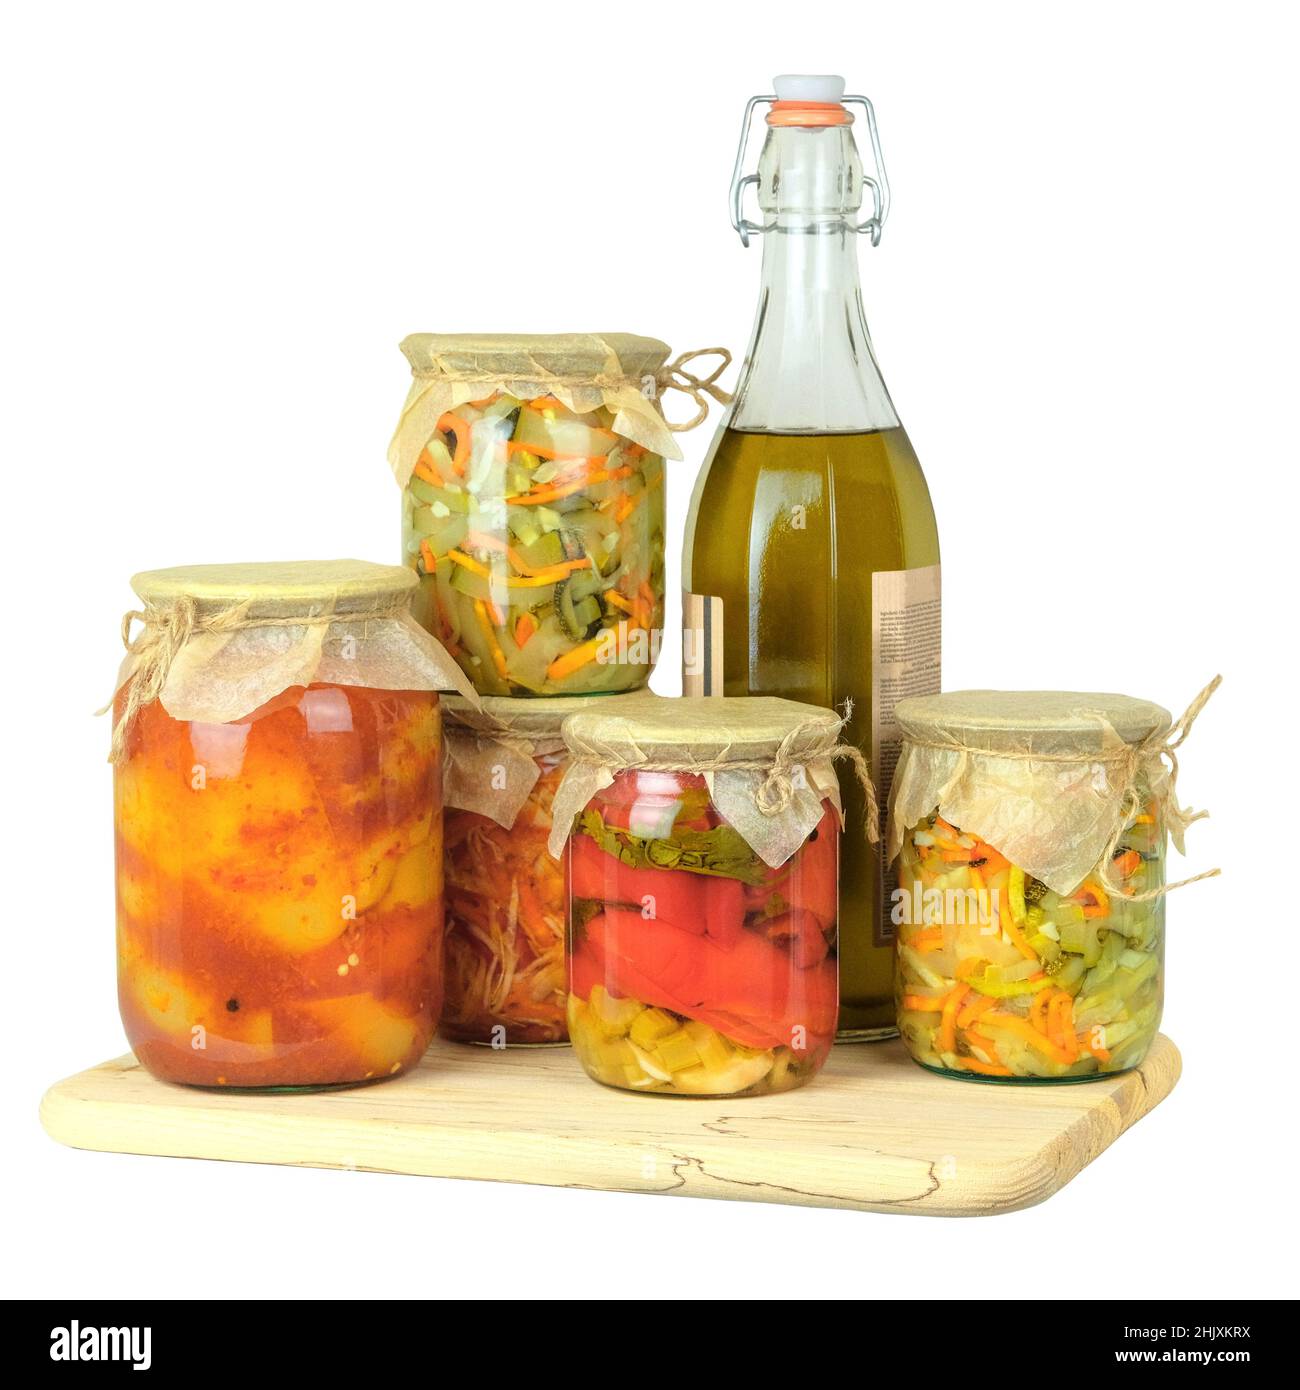 Vasetti di vetro di varietà di verdure sott'aceto o fermentate fatte in casa isolate su sfondo bianco. Concetto di cibo fermentato. Alimenti probiotici in dieta equilibrata Foto Stock